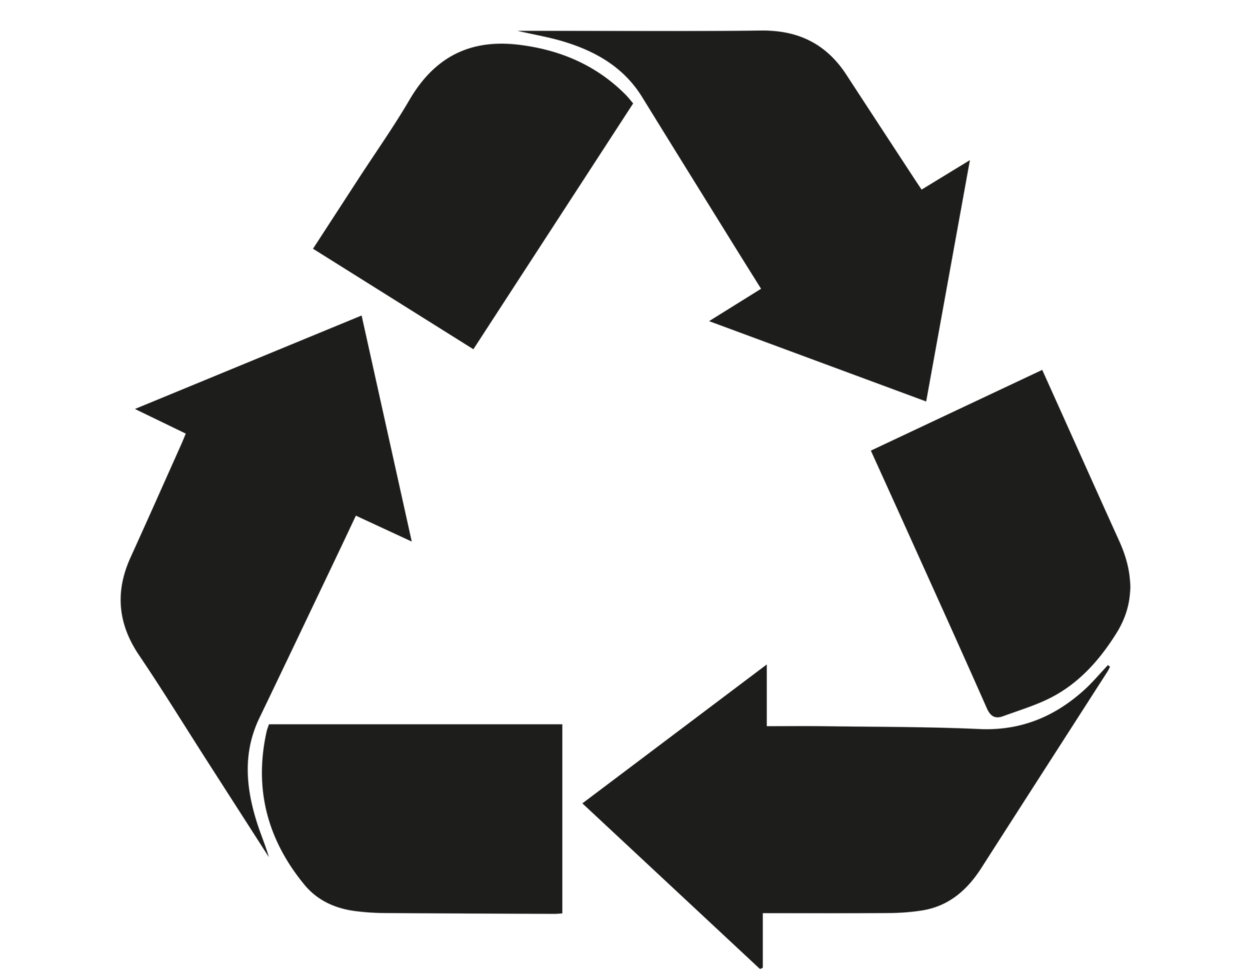 símbolo de reciclaje png fondo transparente